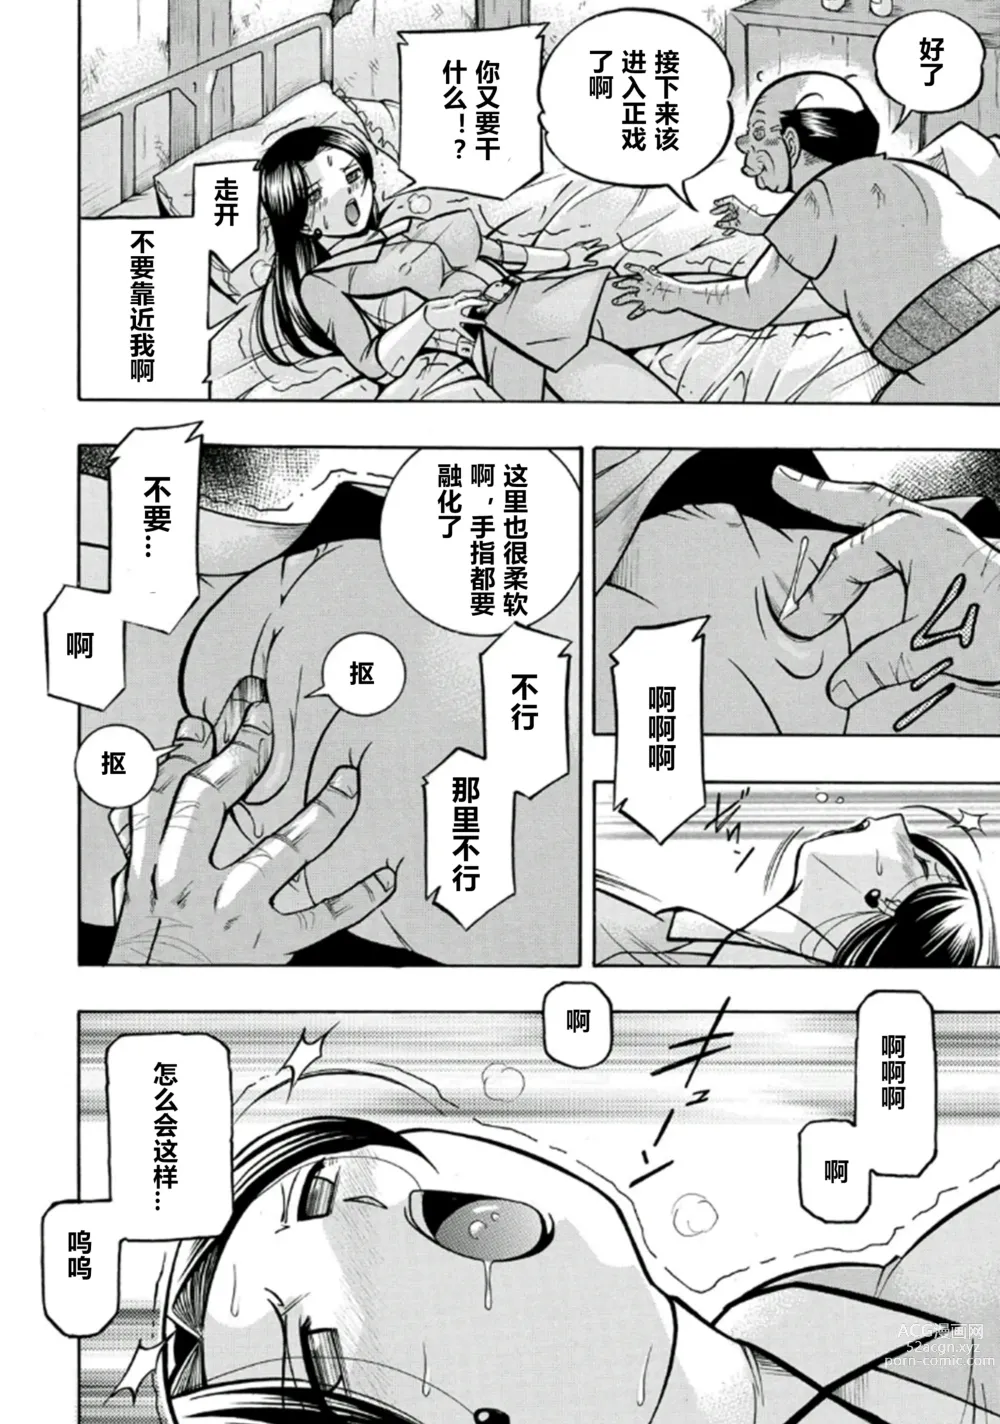 Page 23 of manga Pink Kuppuku - Pink Surrender